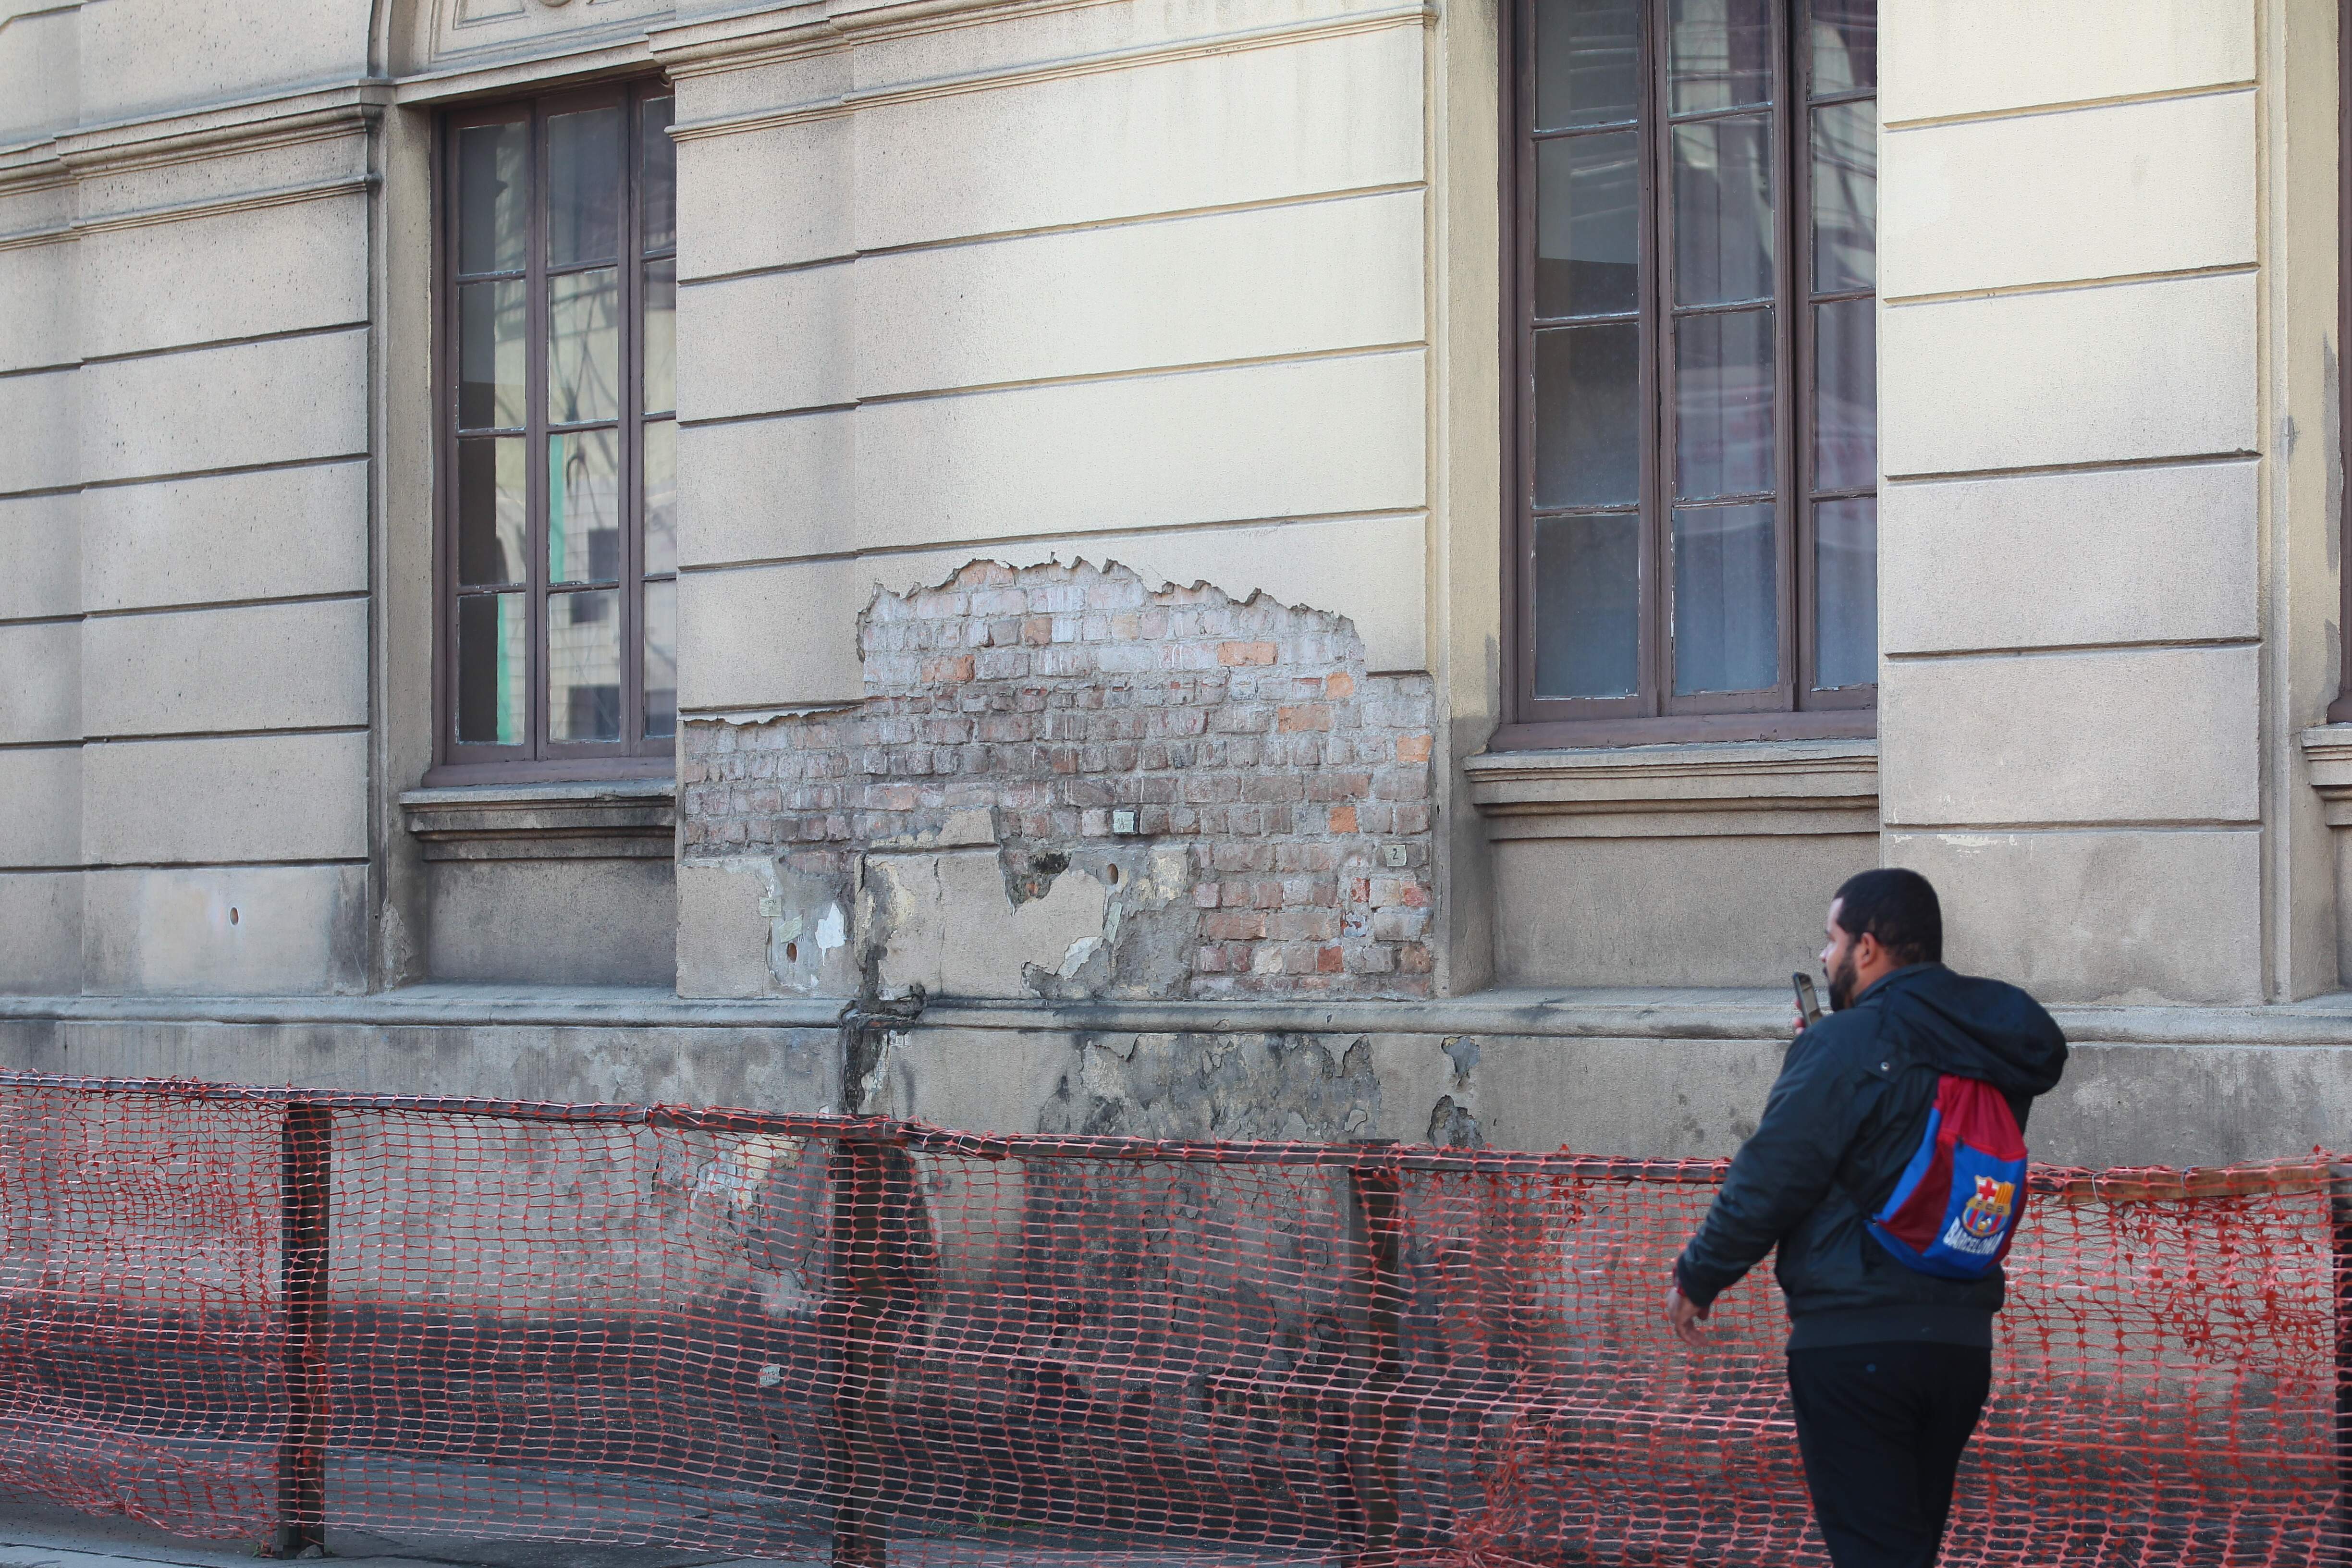 Haverá reparos na fachada, da qual placas de concreto se soltaram